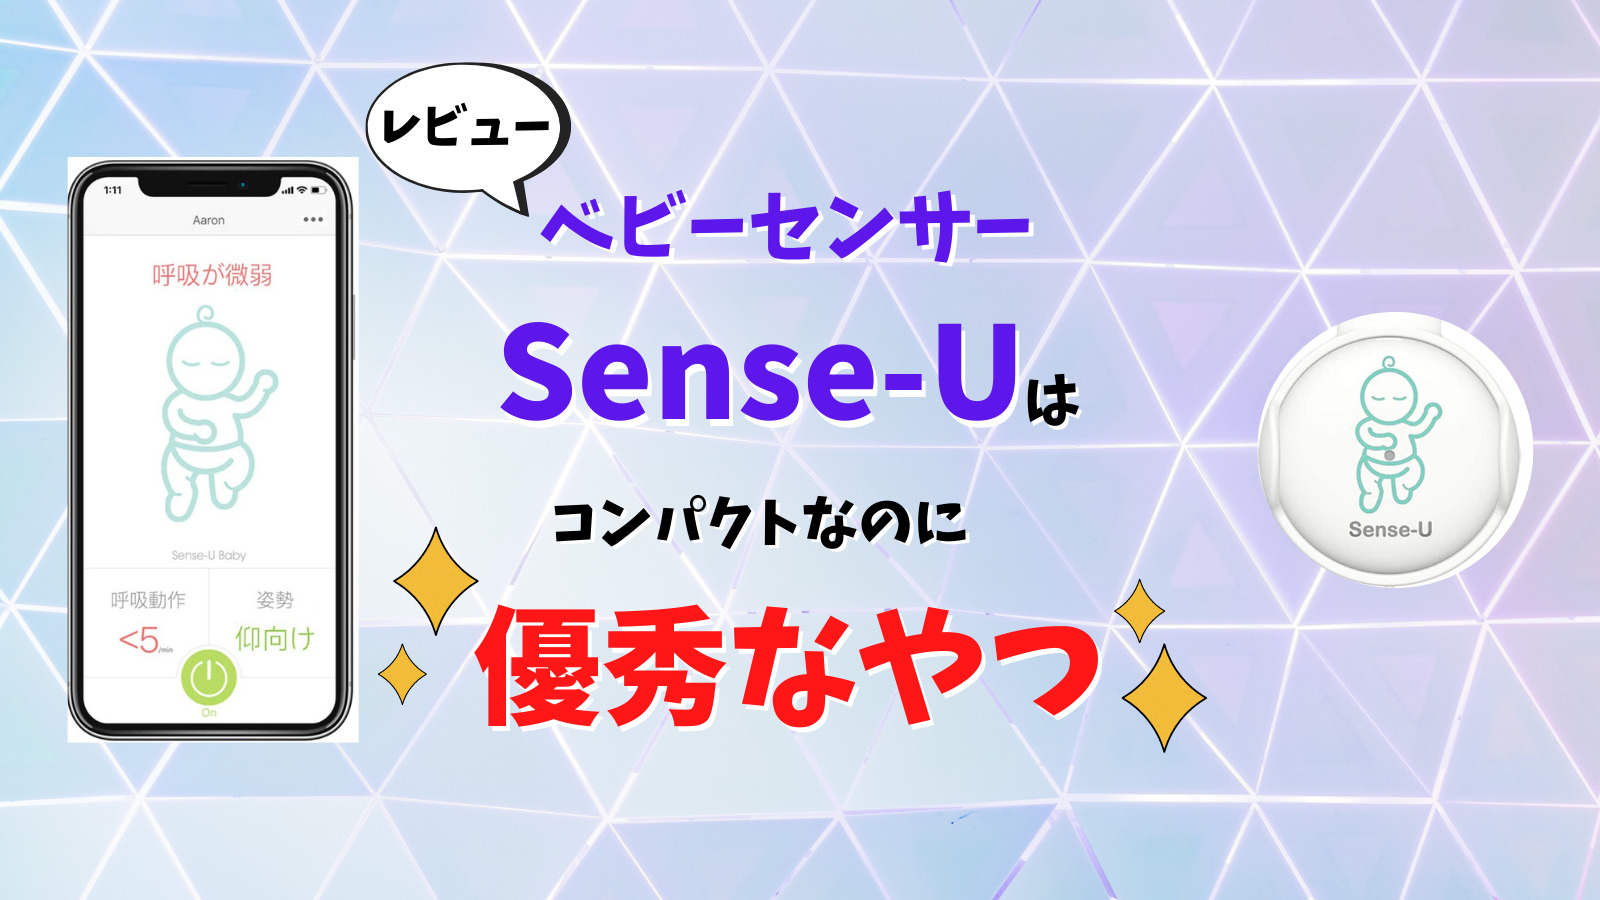 【レビュー】ベビーセンサーSense-Uは優秀なやつ